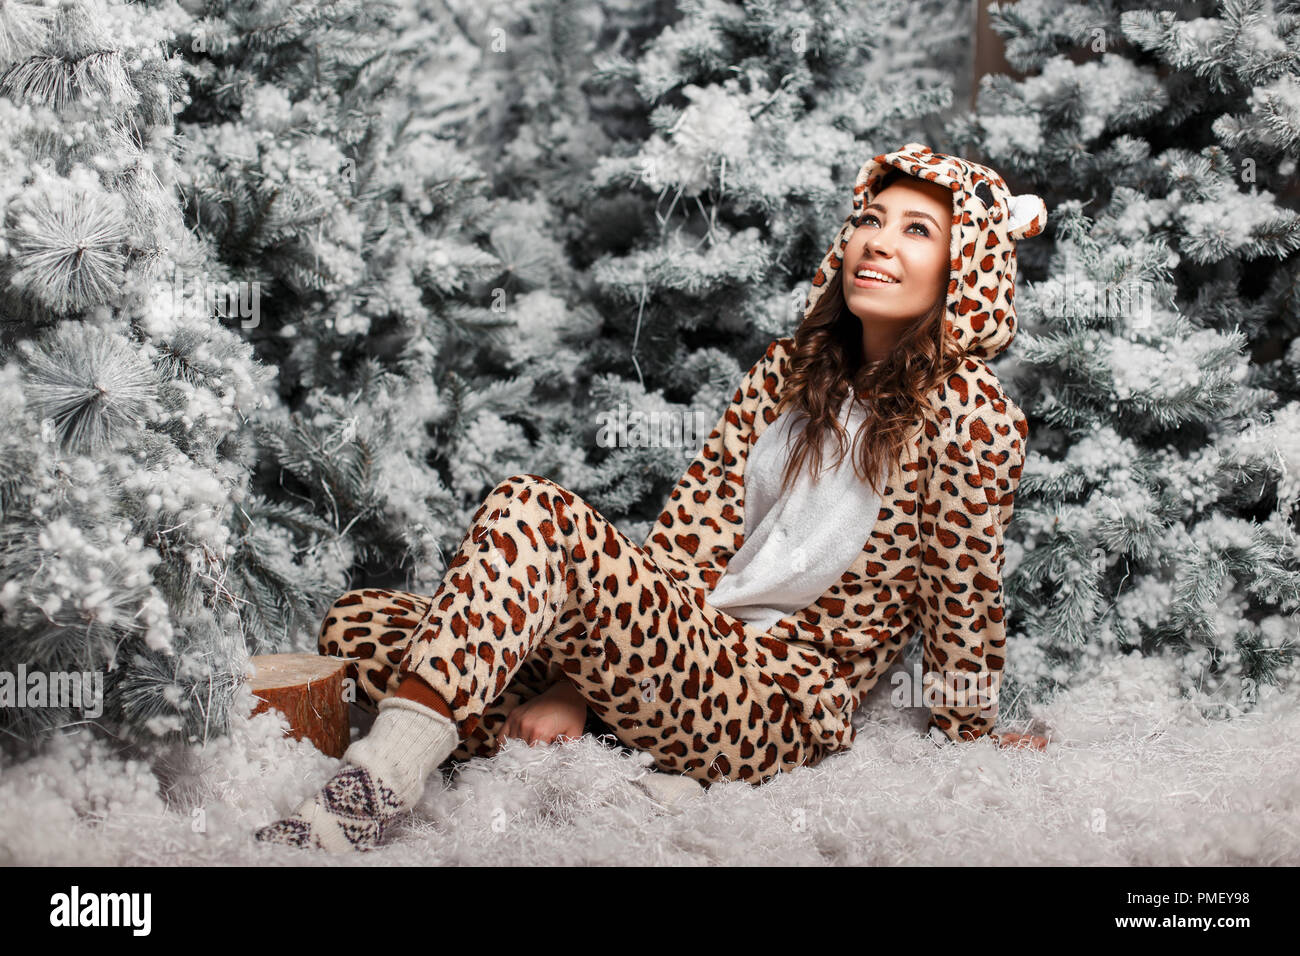 Jeune femme heureuse avec un sourire dans un drôle de pyjama ours se reposant près d'un arbre de Noël avec de la neige Banque D'Images